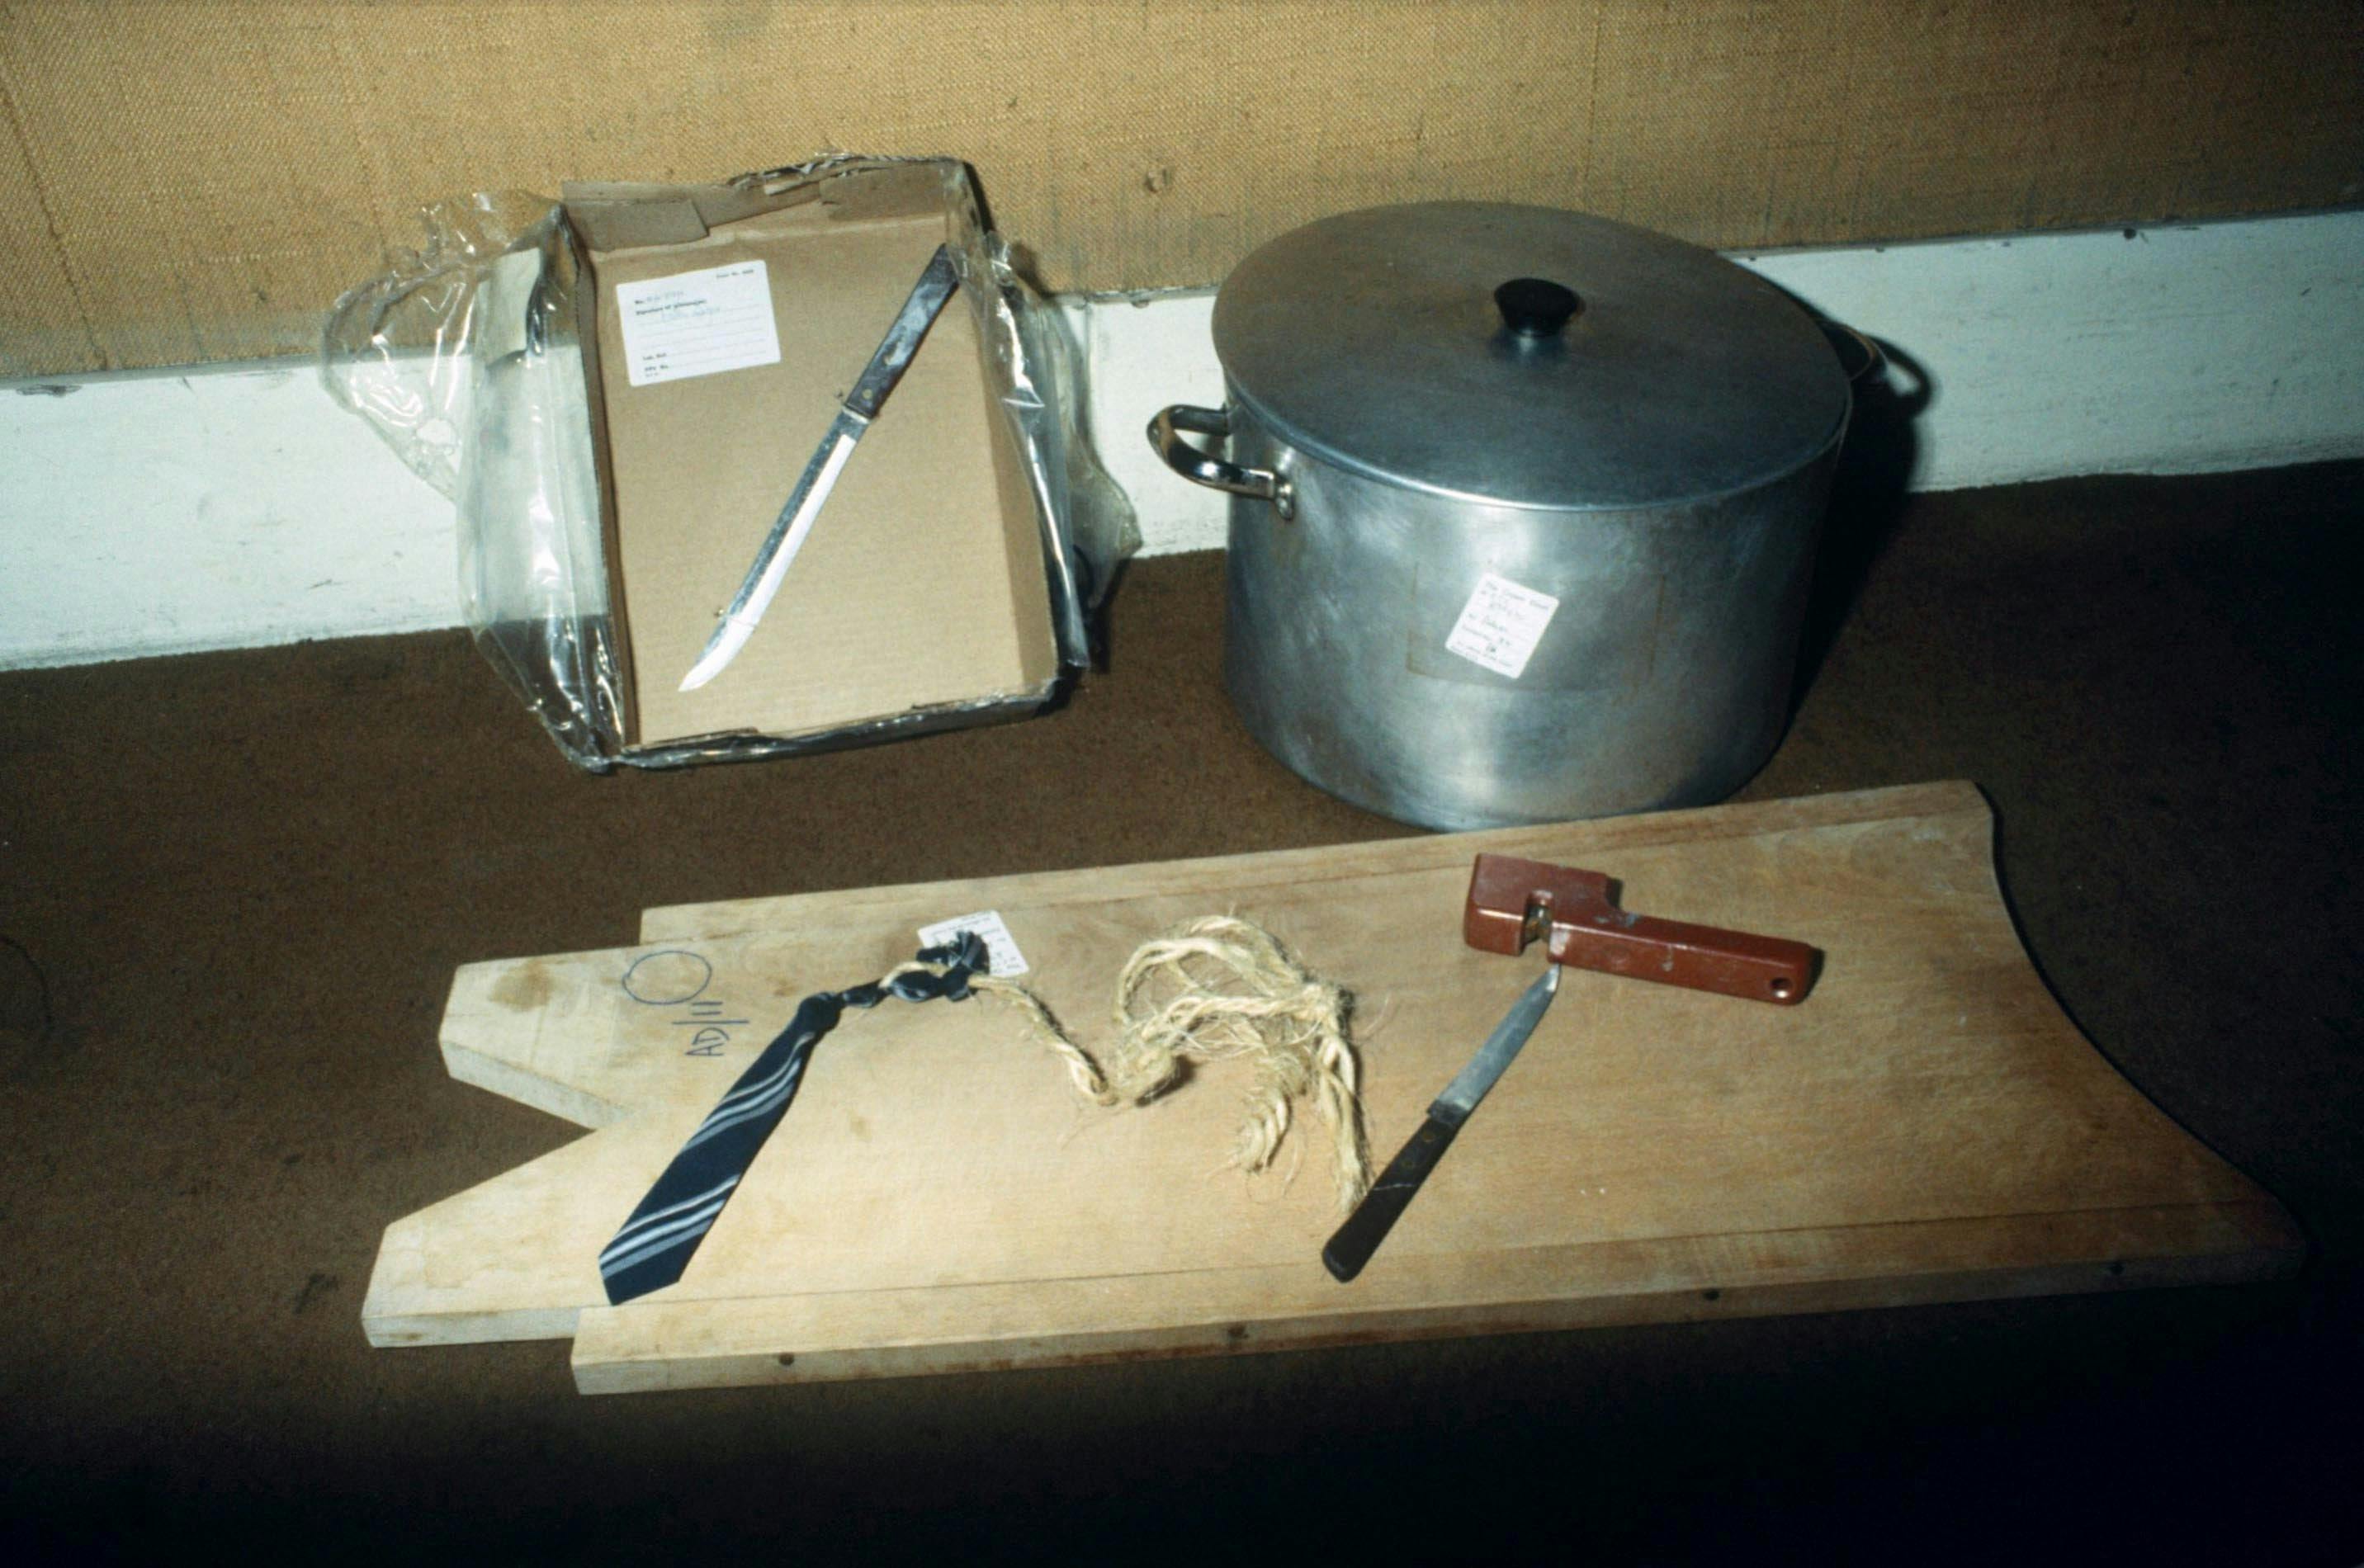 Politiet konfiskerede blandt andet disse ting, som Dennis Nilsen havde brugt til at myrde og partere sine ofre med.
